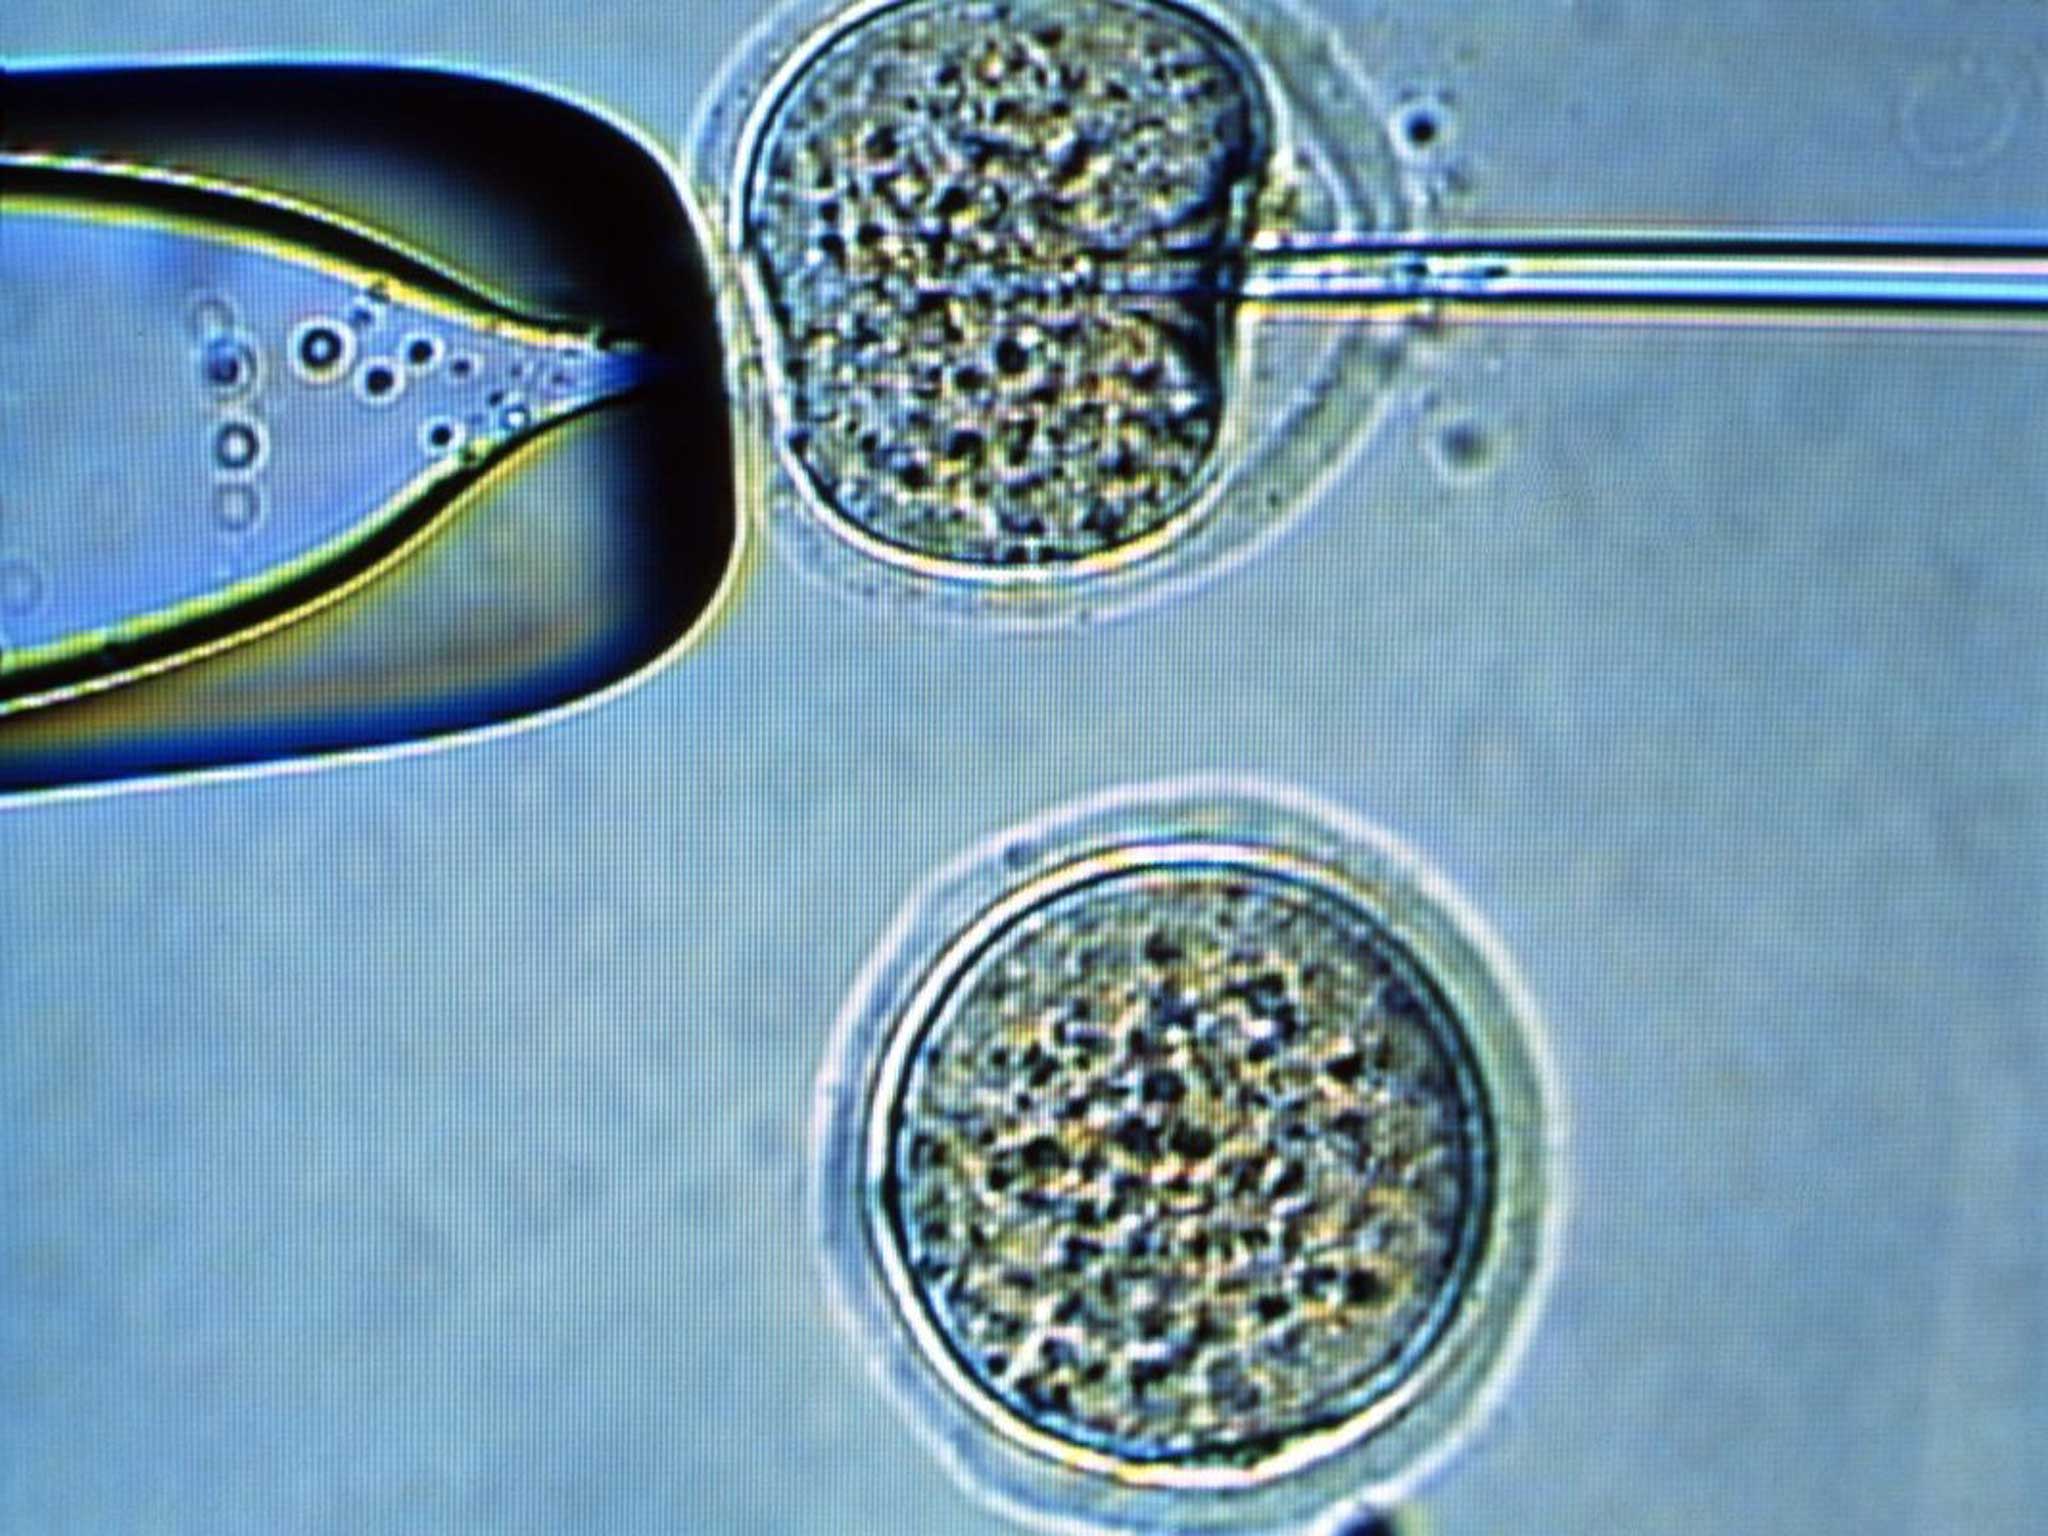 Пересадка ядер клеток эмбрионов